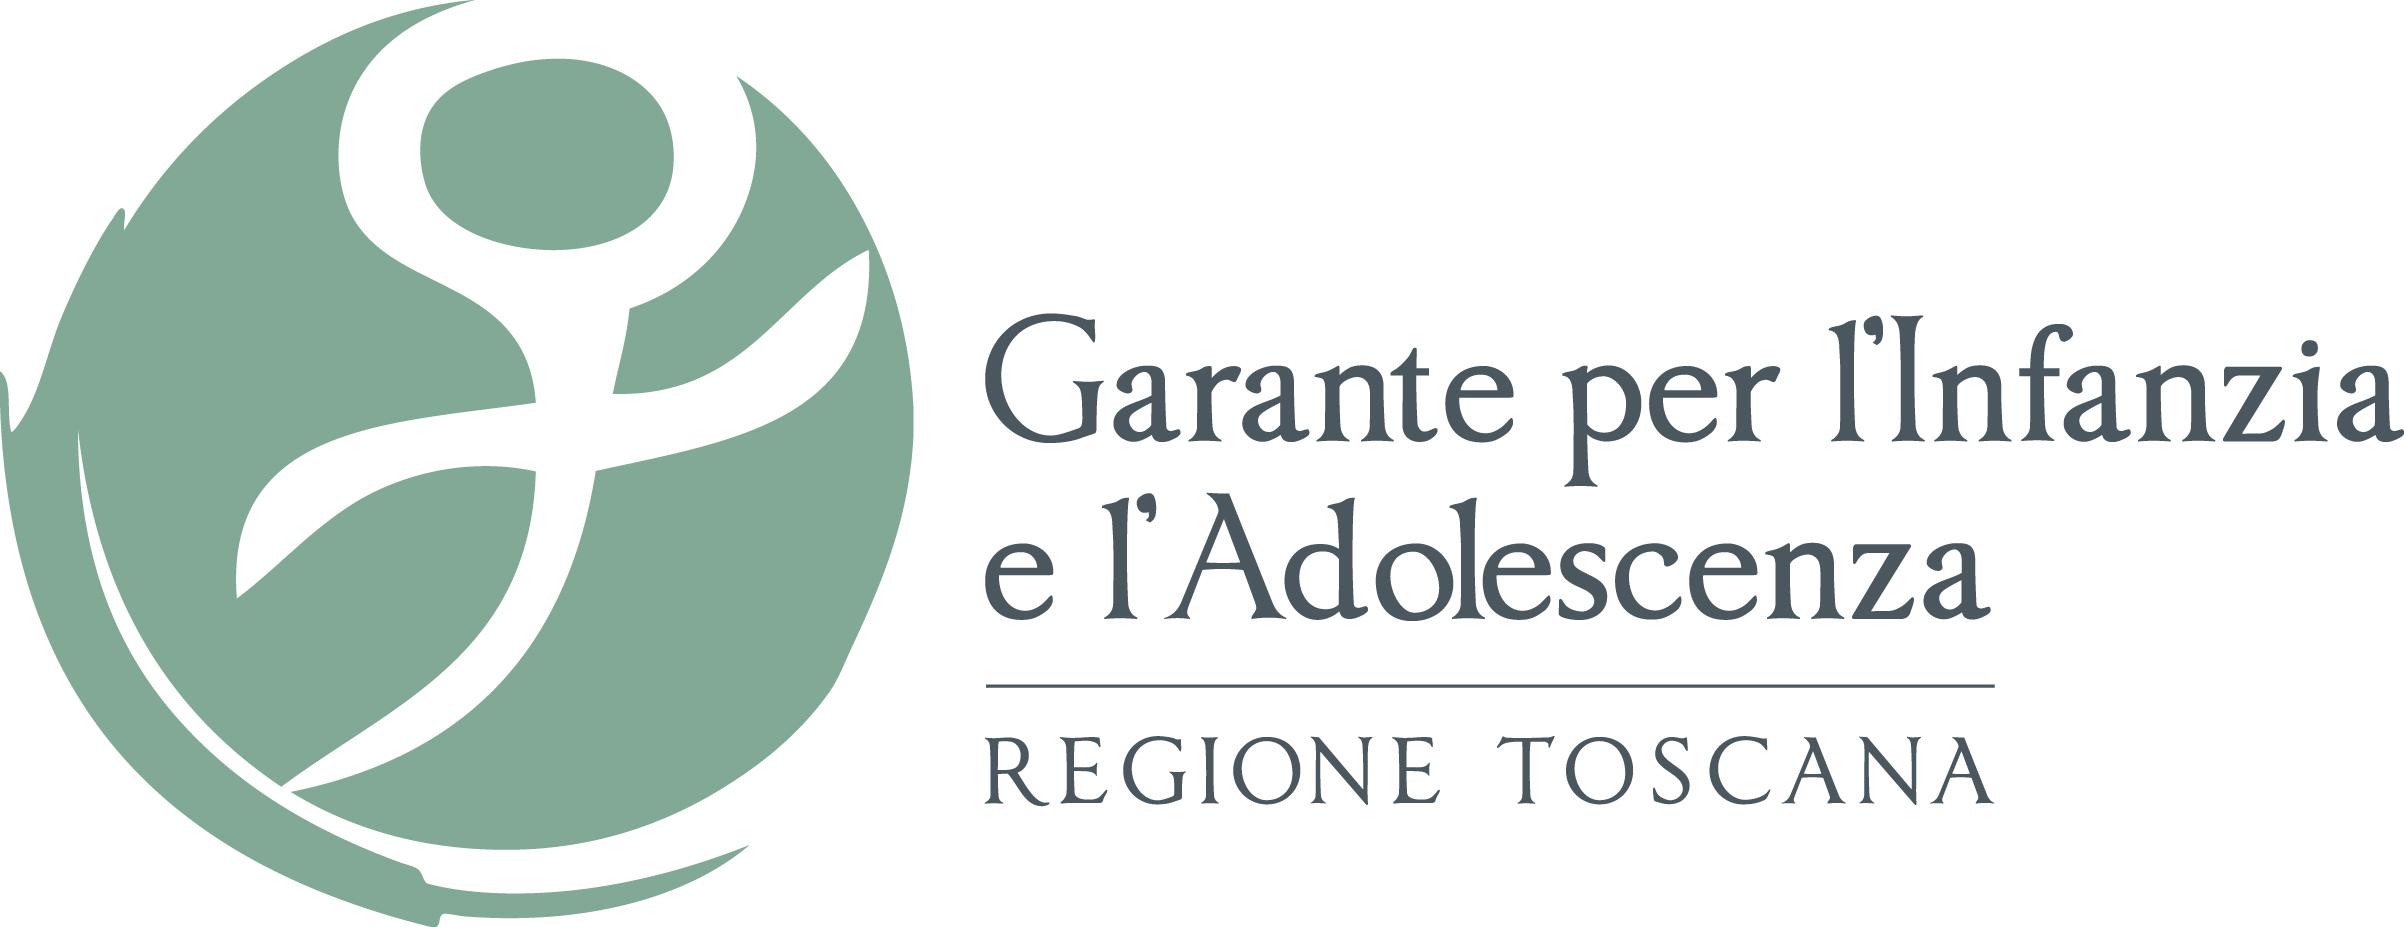 logo Garante per l'Infanzia e l'Adolescenza della Regione Toscana